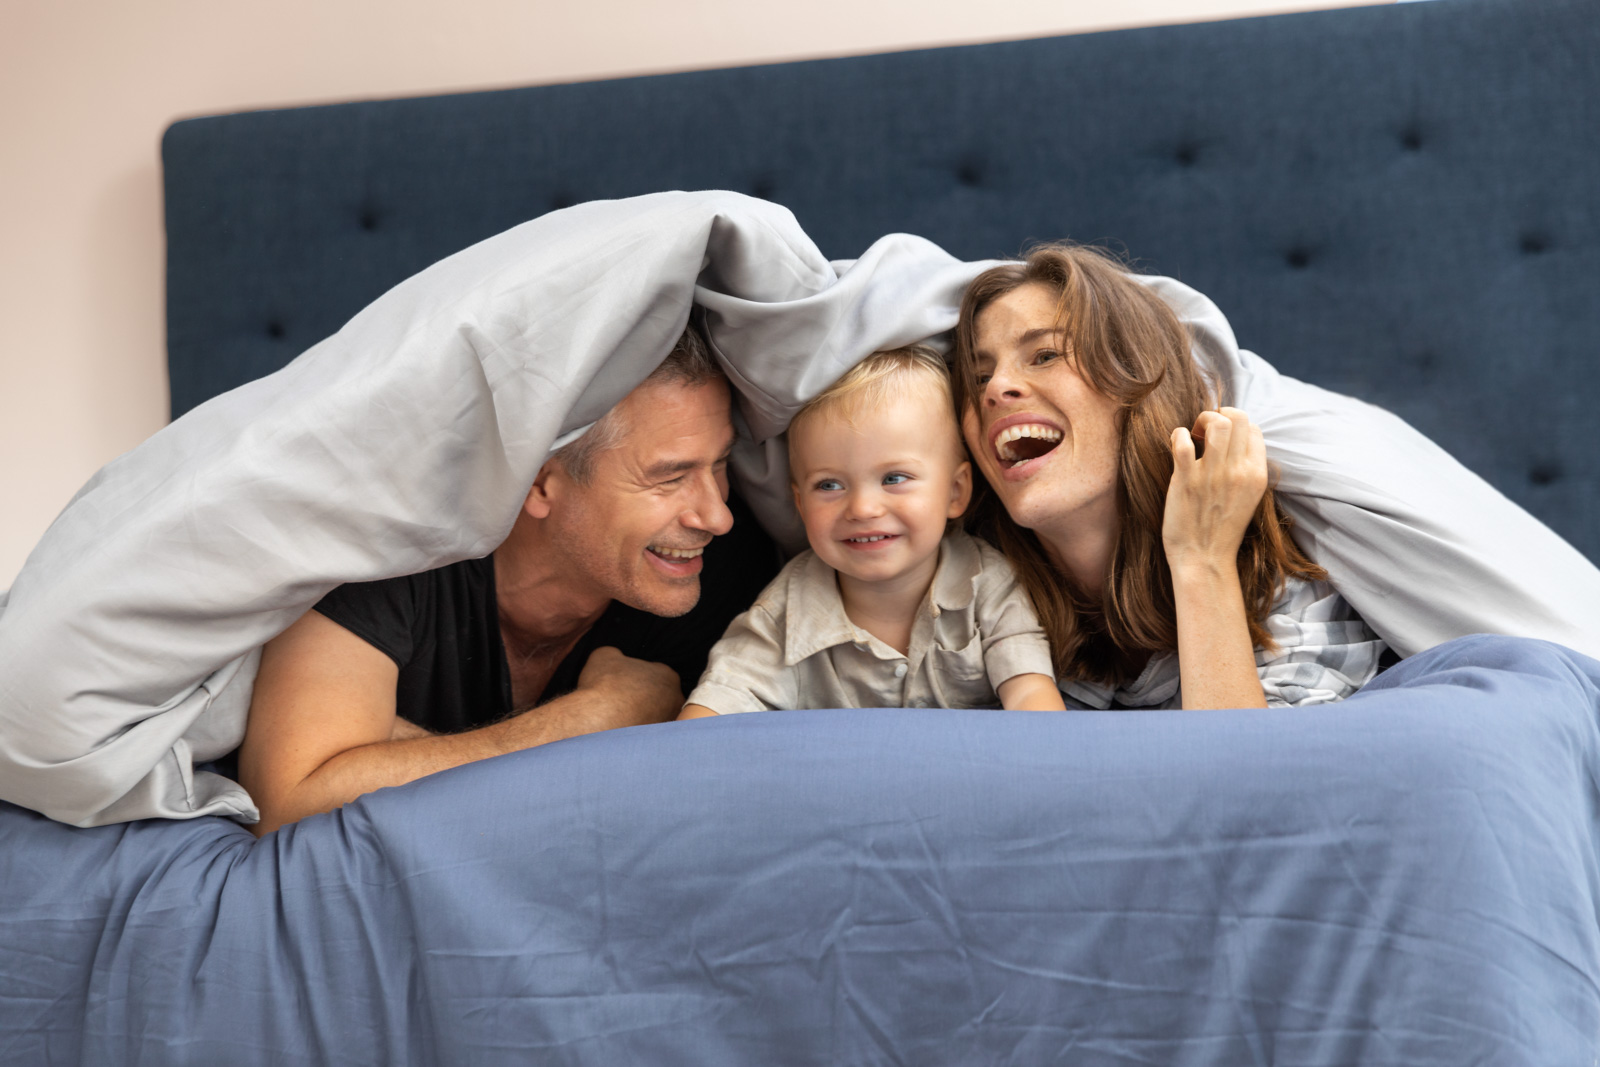 Mutter, Vater und Kind liegen in einem Svanebett mit dem Gesichtern zur Kamera, halb unter der Decke versteckt